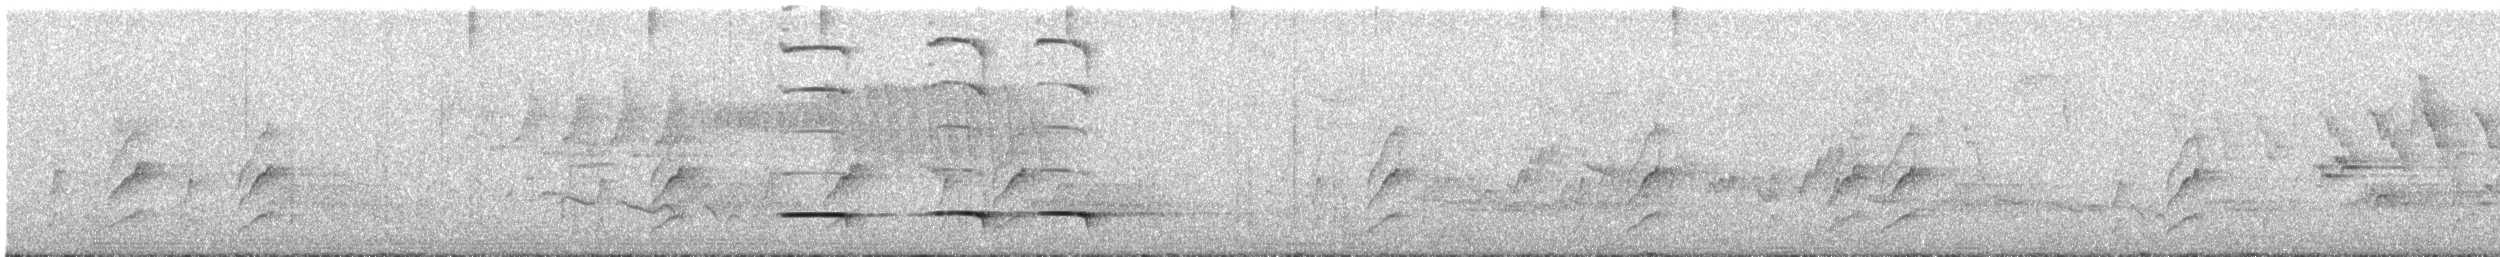 Ak Karınlı Yerçavuşu - ML441292501